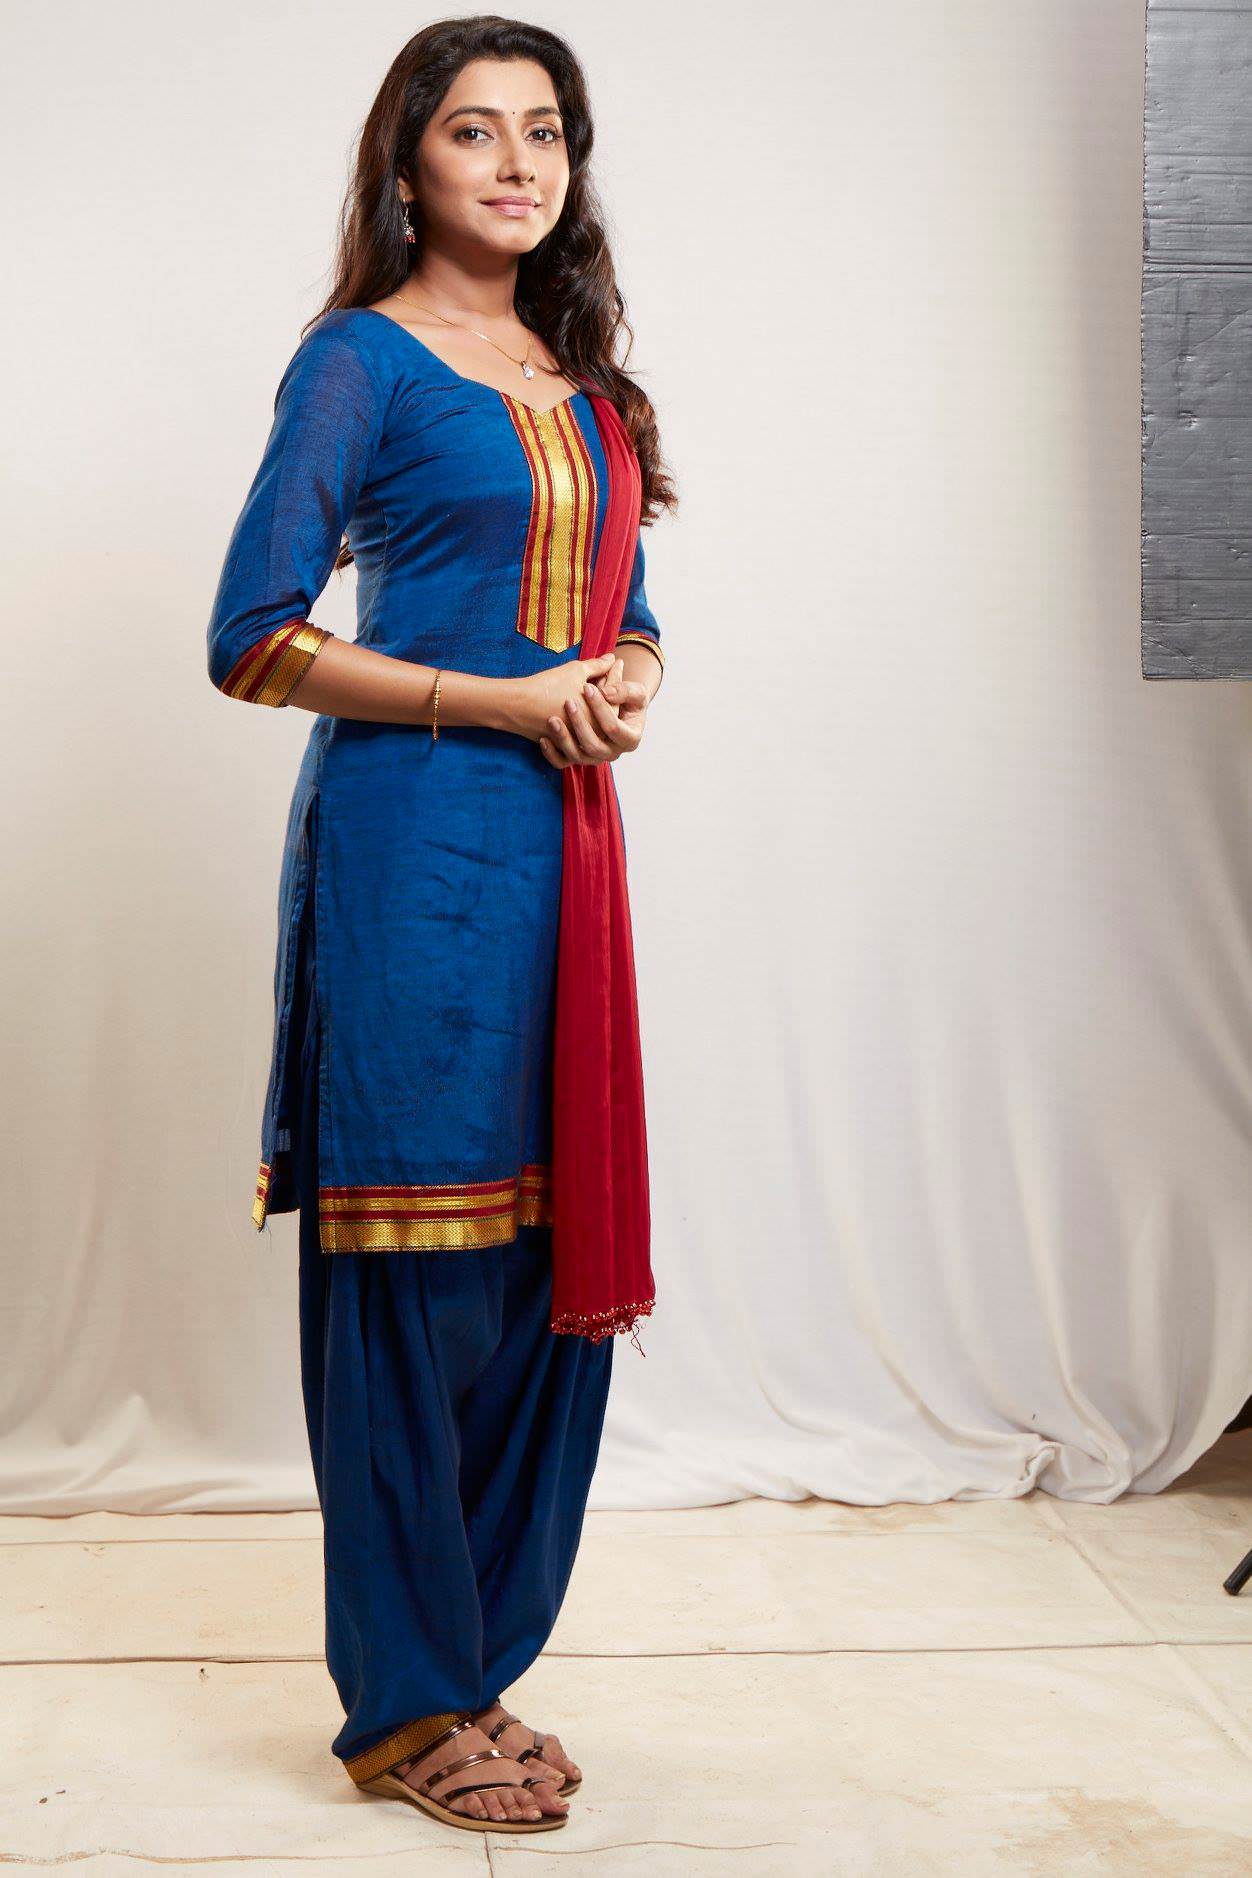 Sur Rahu De - Zee Yuva Serial Cast Actress Actors Photo Wiki